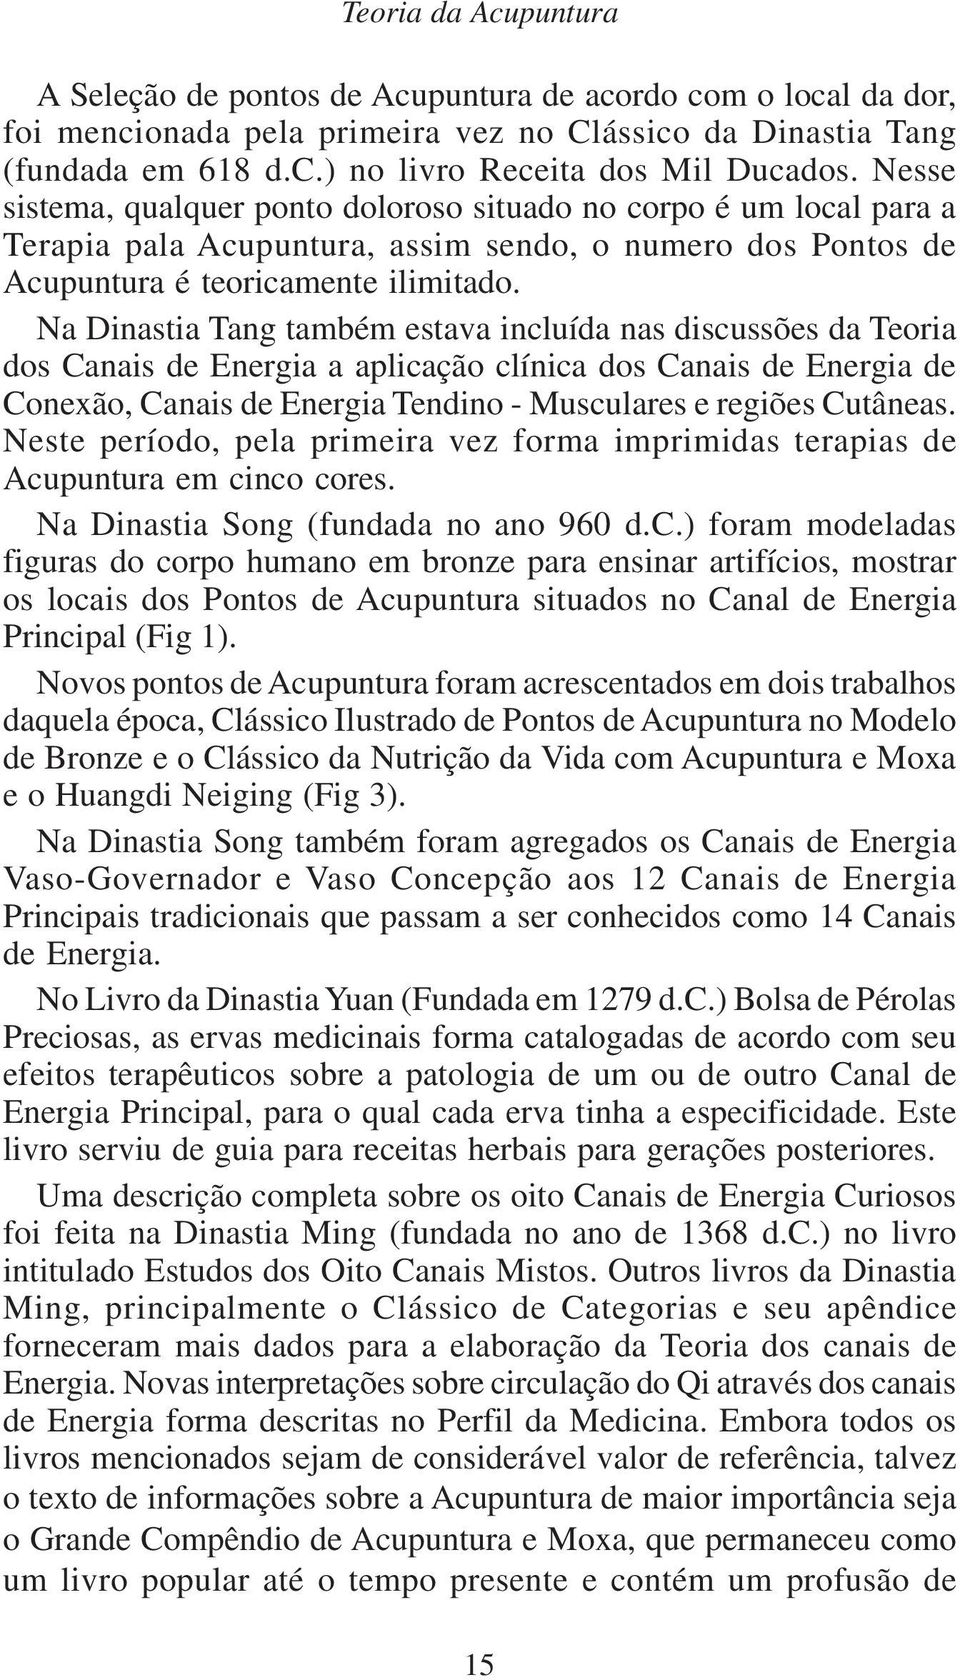 Na Dinastia Tang também estava incluída nas discussões da Teoria dos Canais de Energia a aplicação clínica dos Canais de Energia de Conexão, Canais de Energia Tendino - Musculares e regiões Cutâneas.